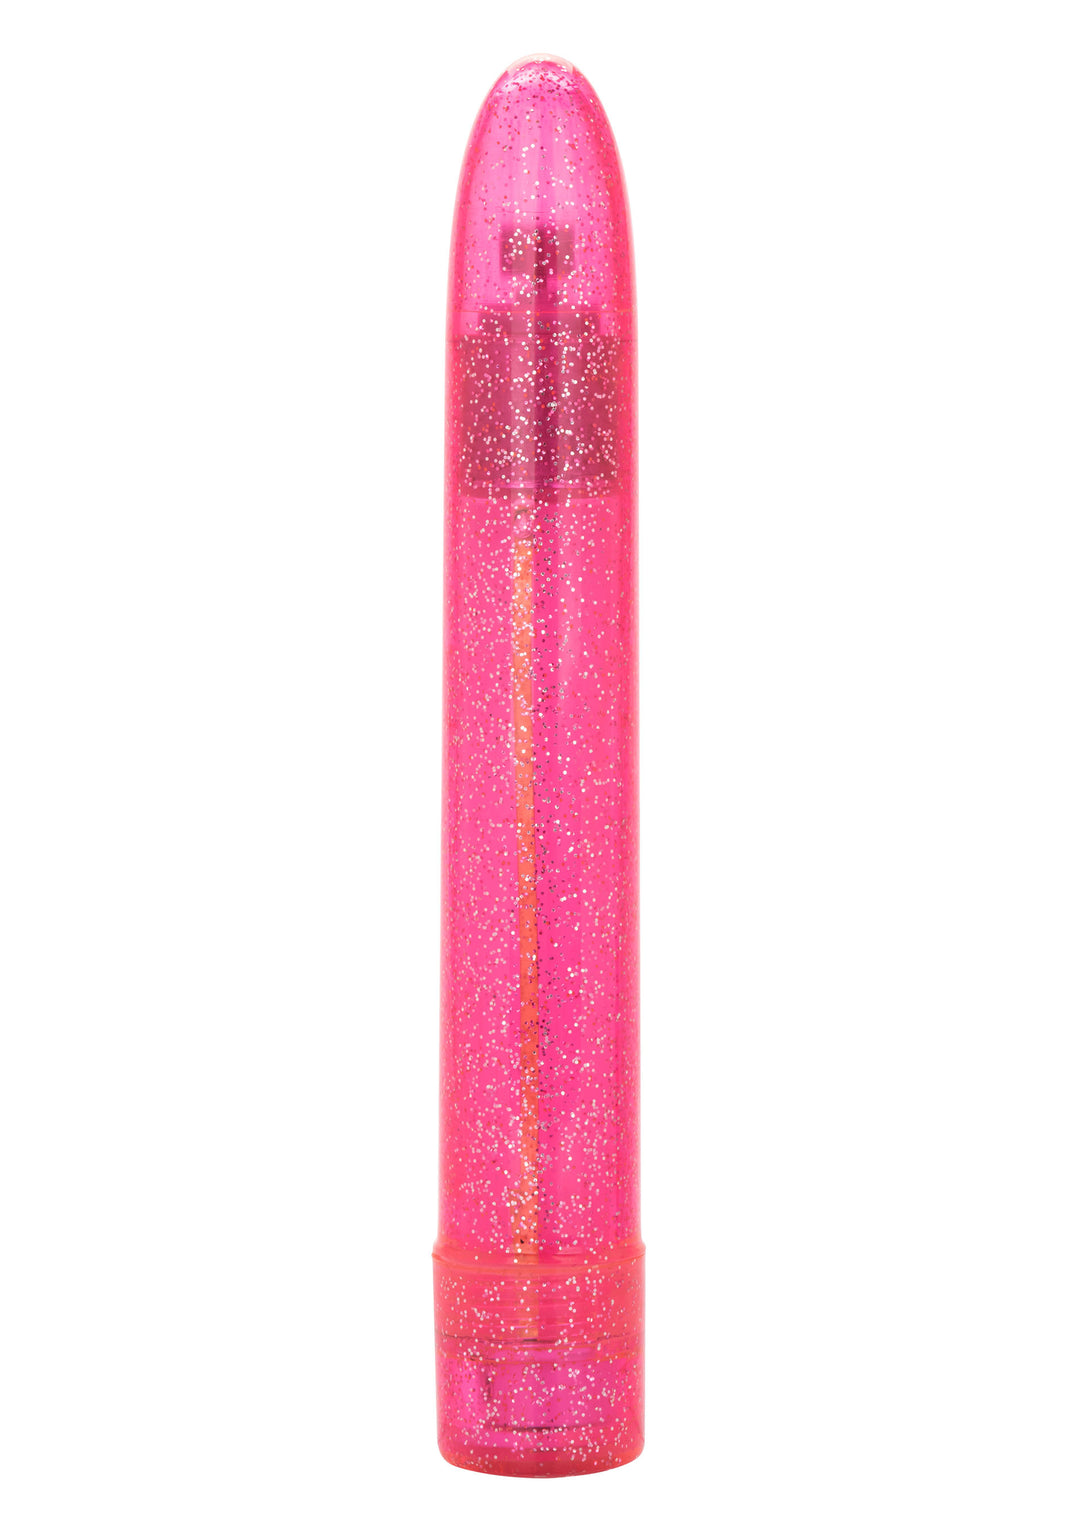 Classic pink Sparkle Slim Vibe vibrator